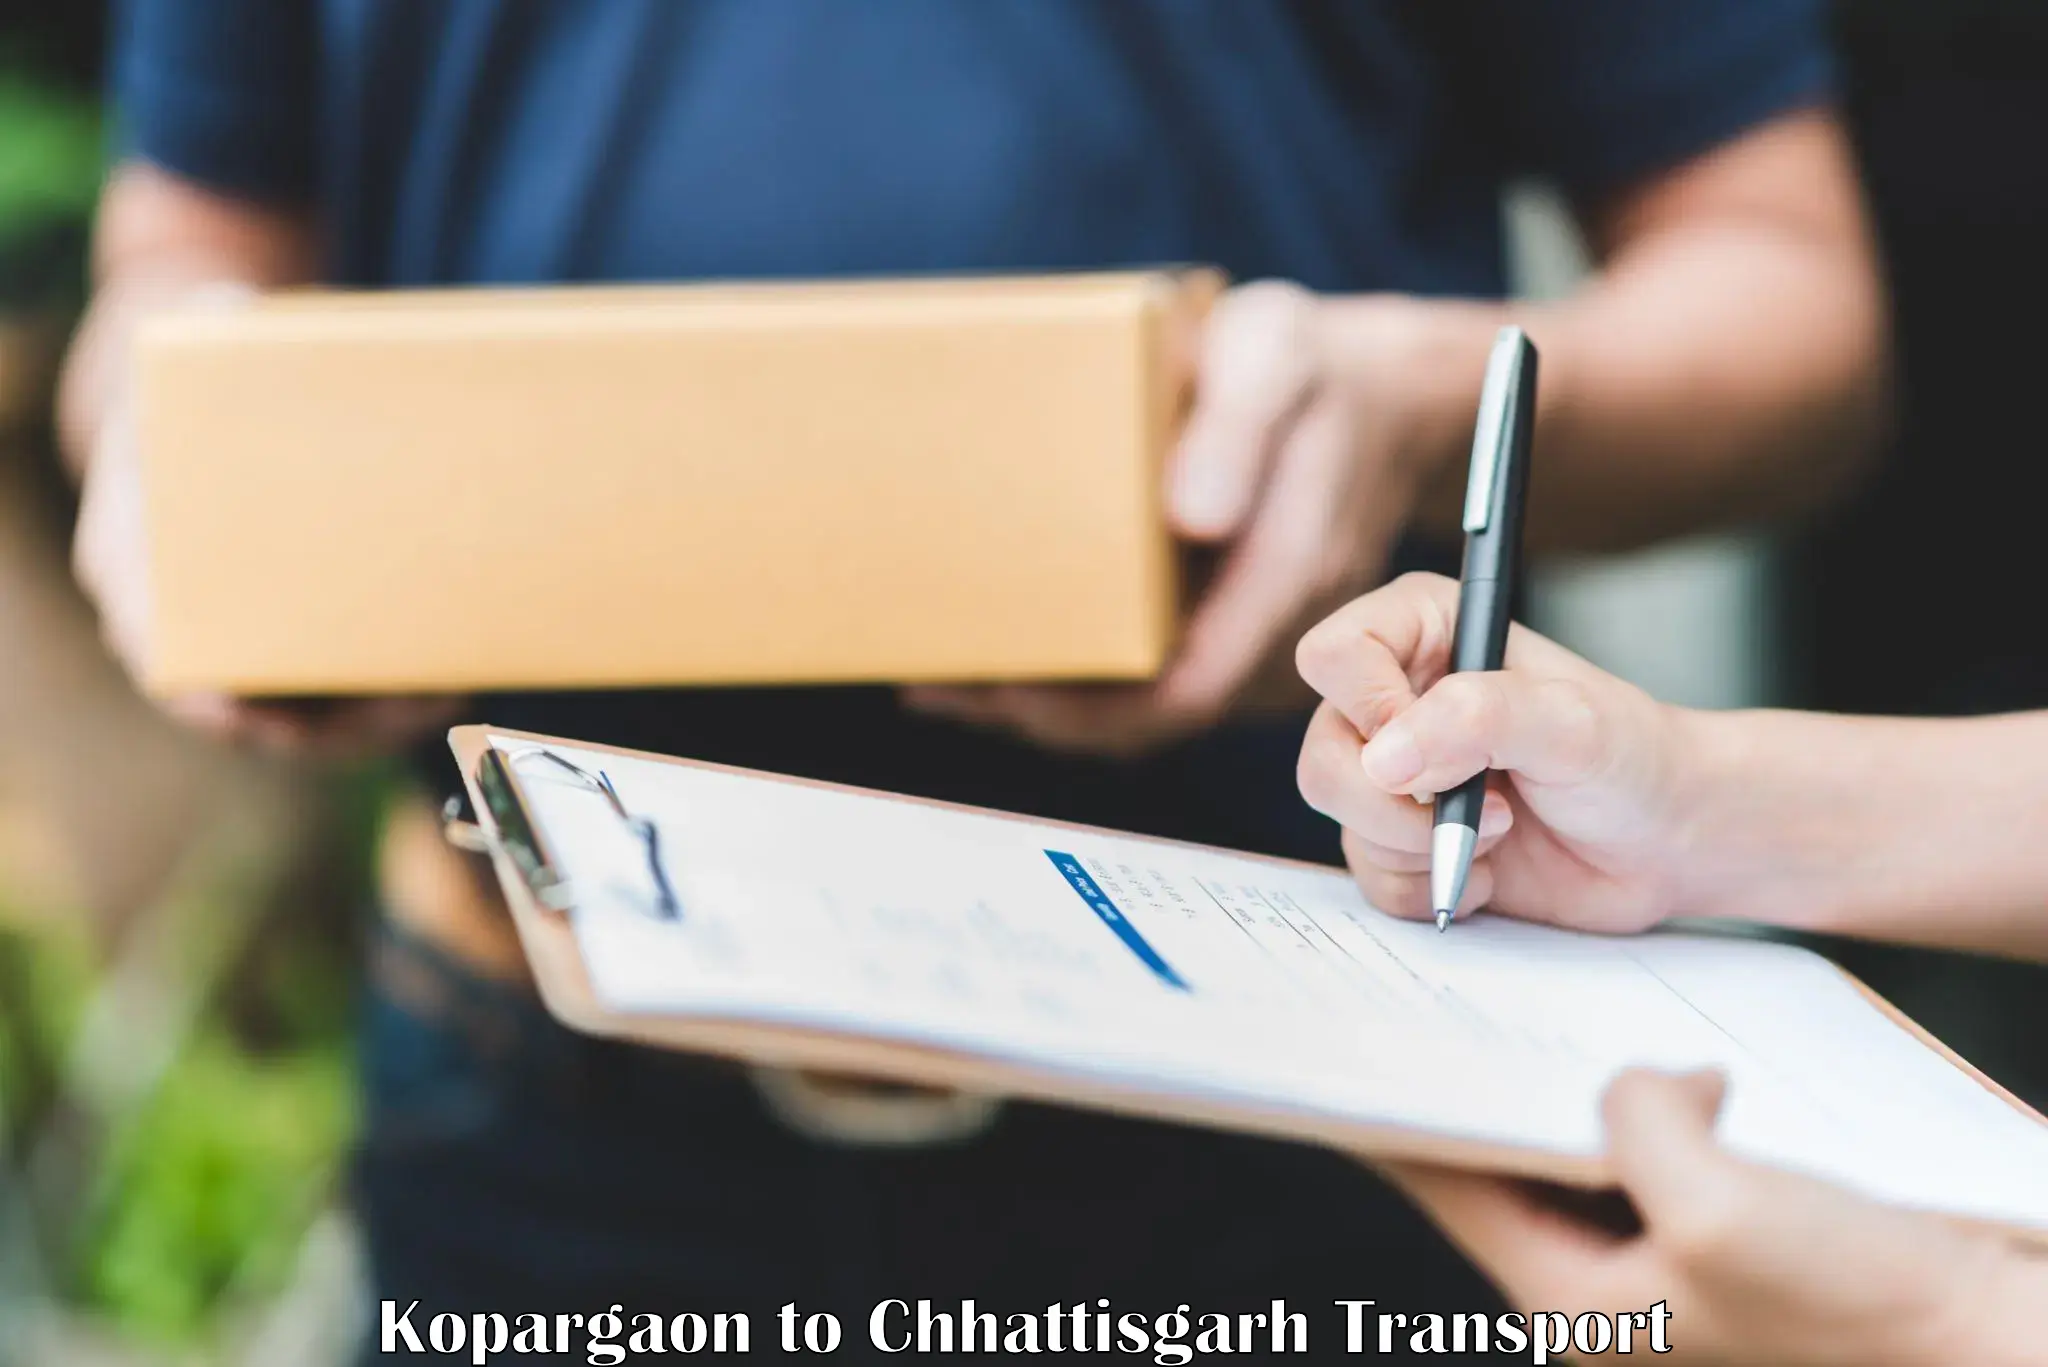 Furniture transport service in Kopargaon to Premnagar